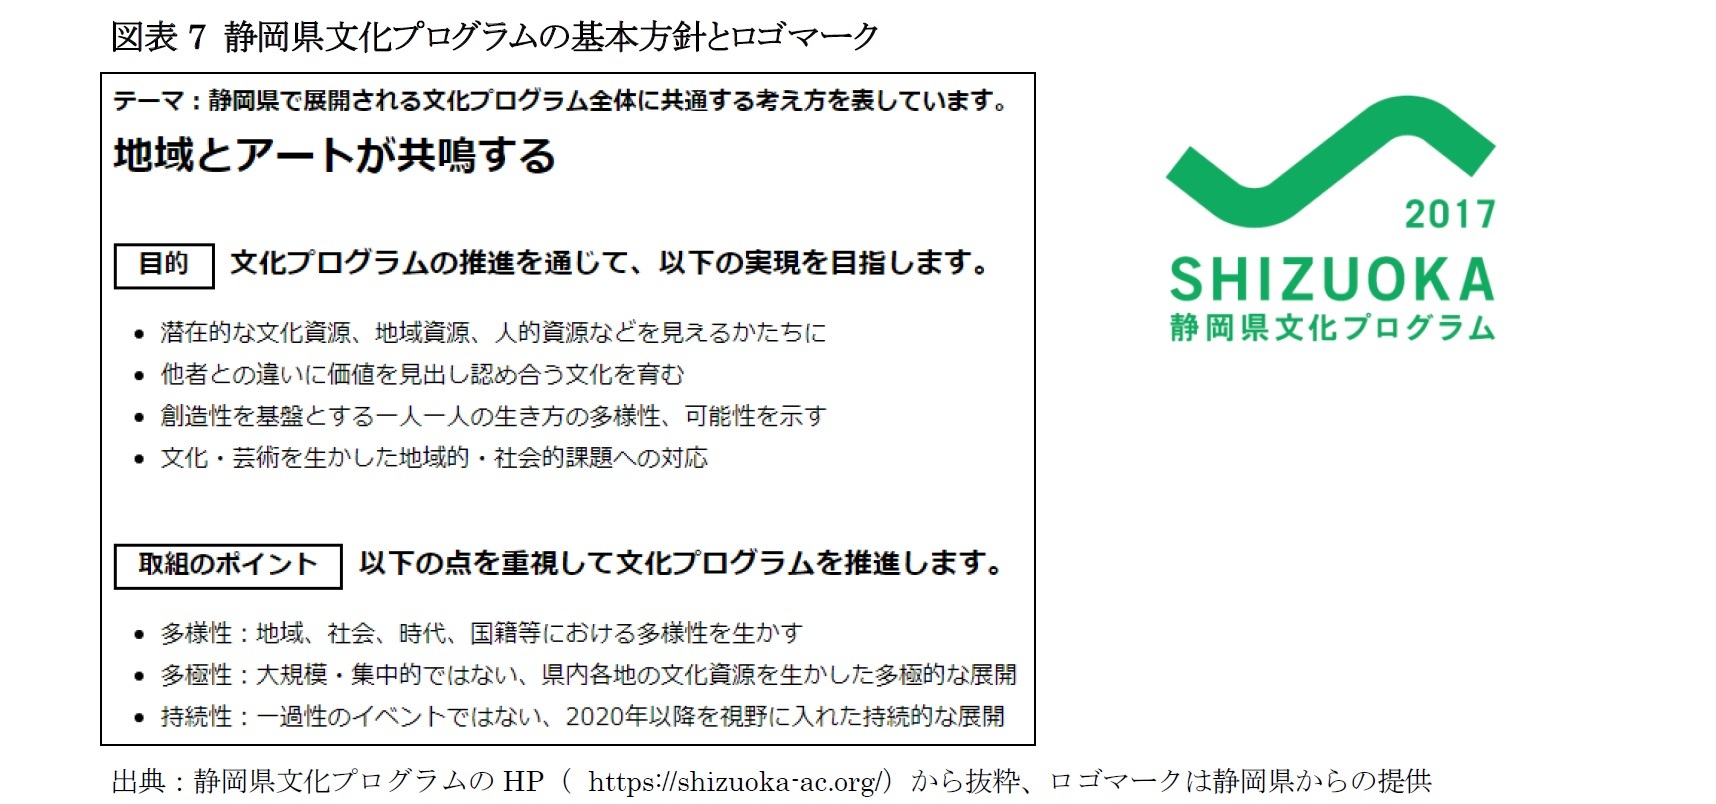 図表7 静岡県文化プログラムの基本方針とロゴマーク